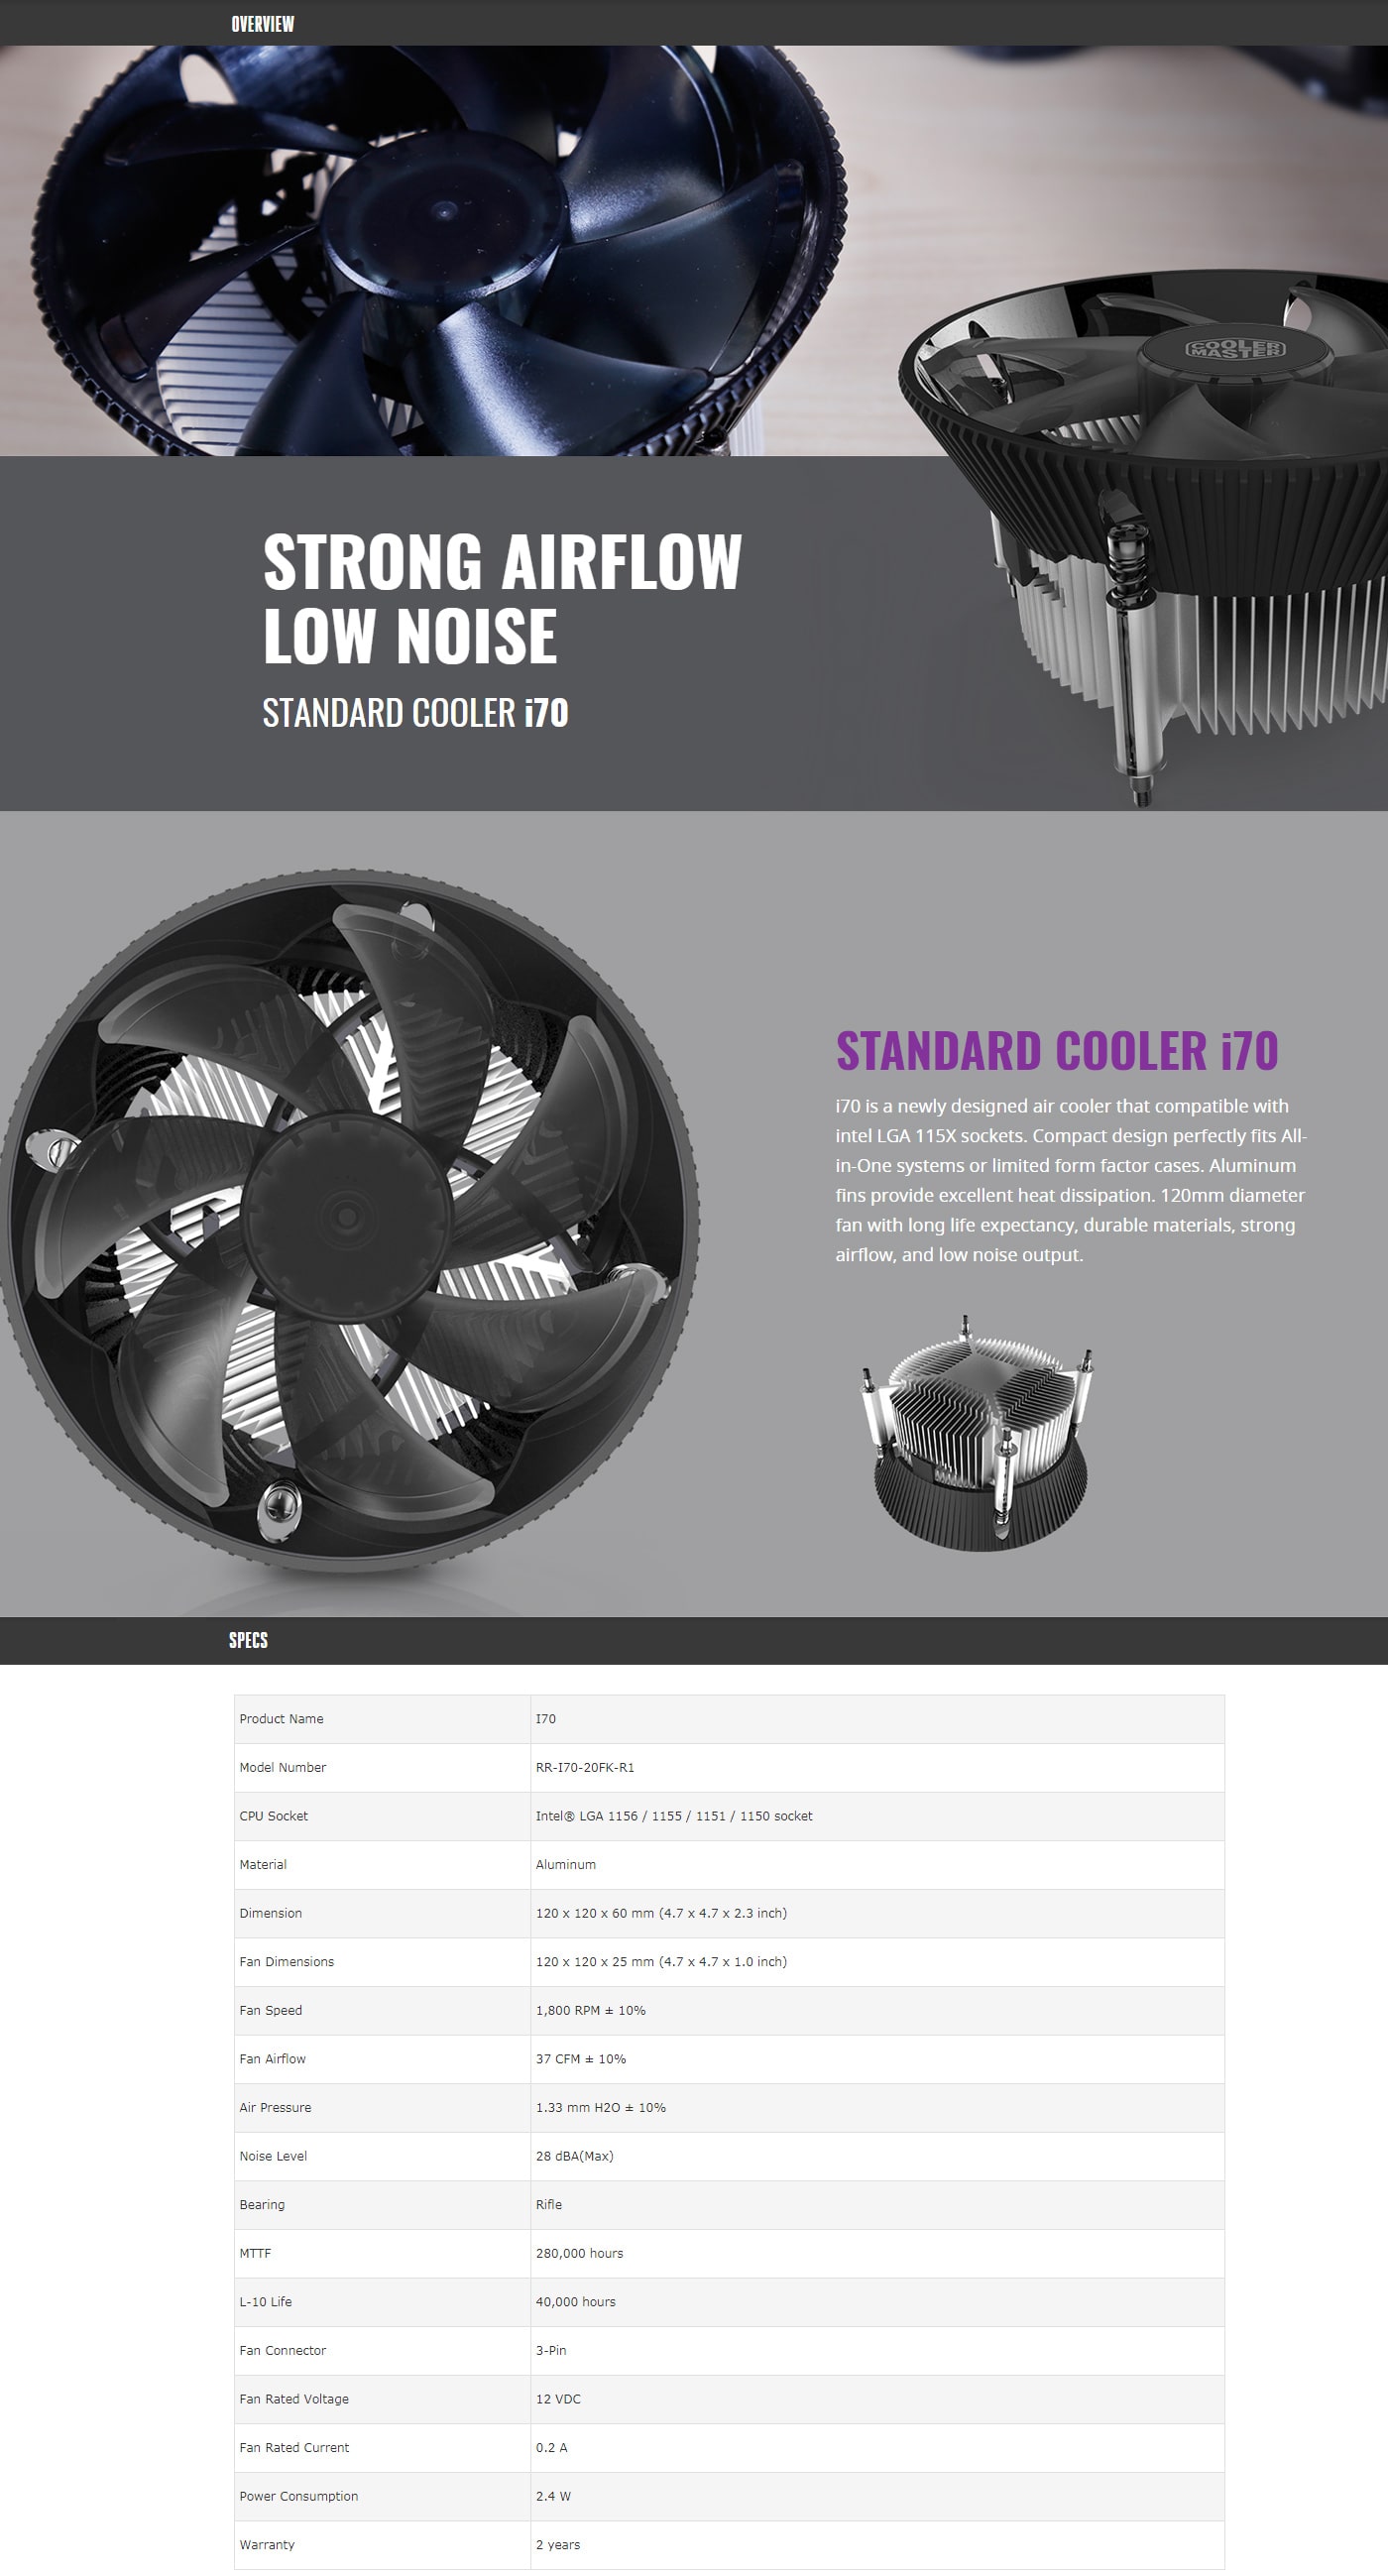 Cooler Master i70 Standard Cooler features